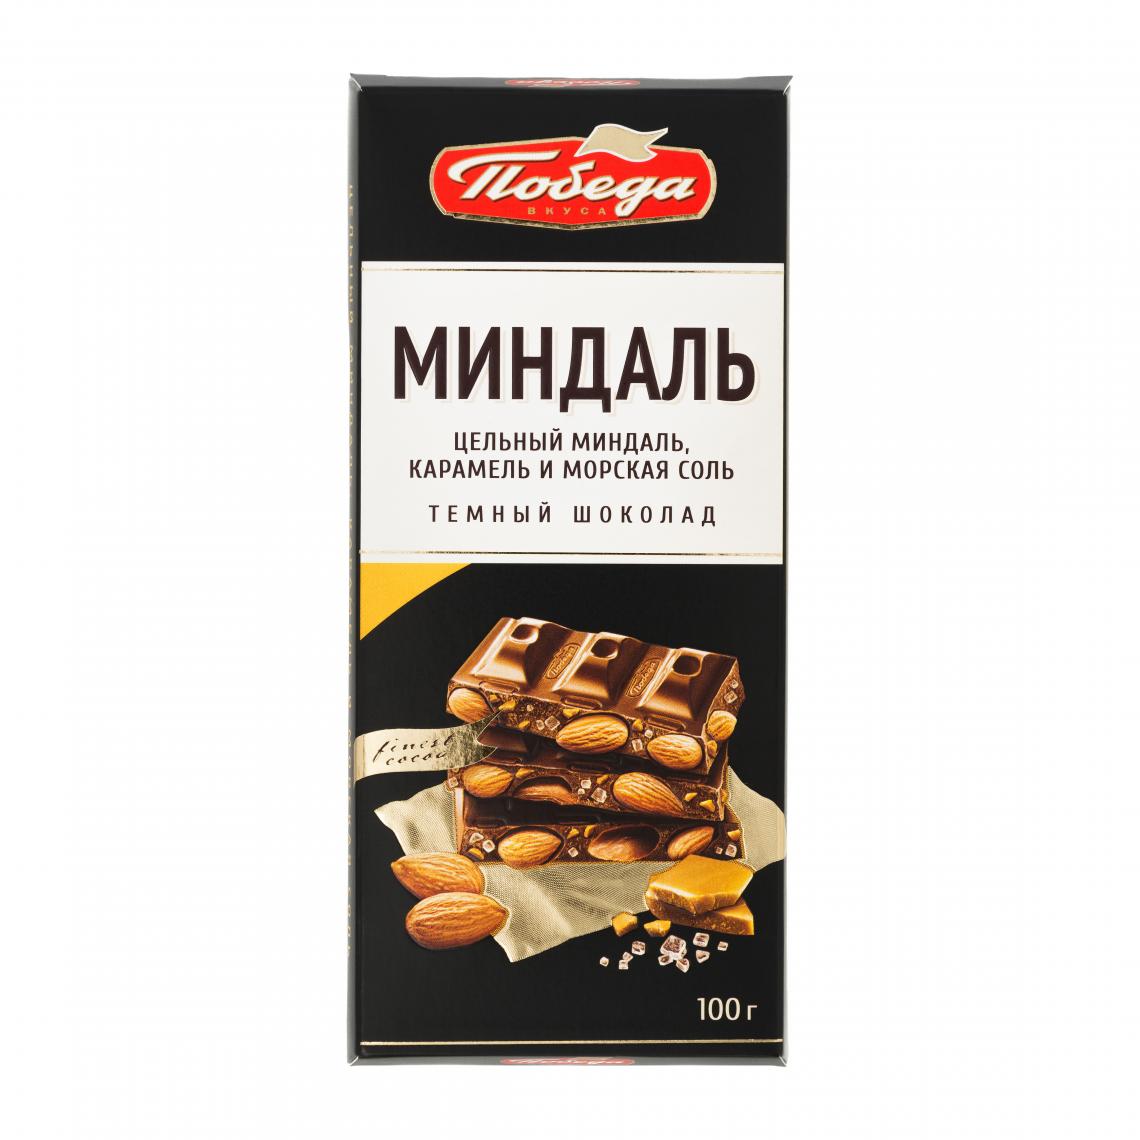 Шоколад темный с цельным миндалем, карамельной крошкой и морской солью Победа Вкуса IM_1121 - фото 1